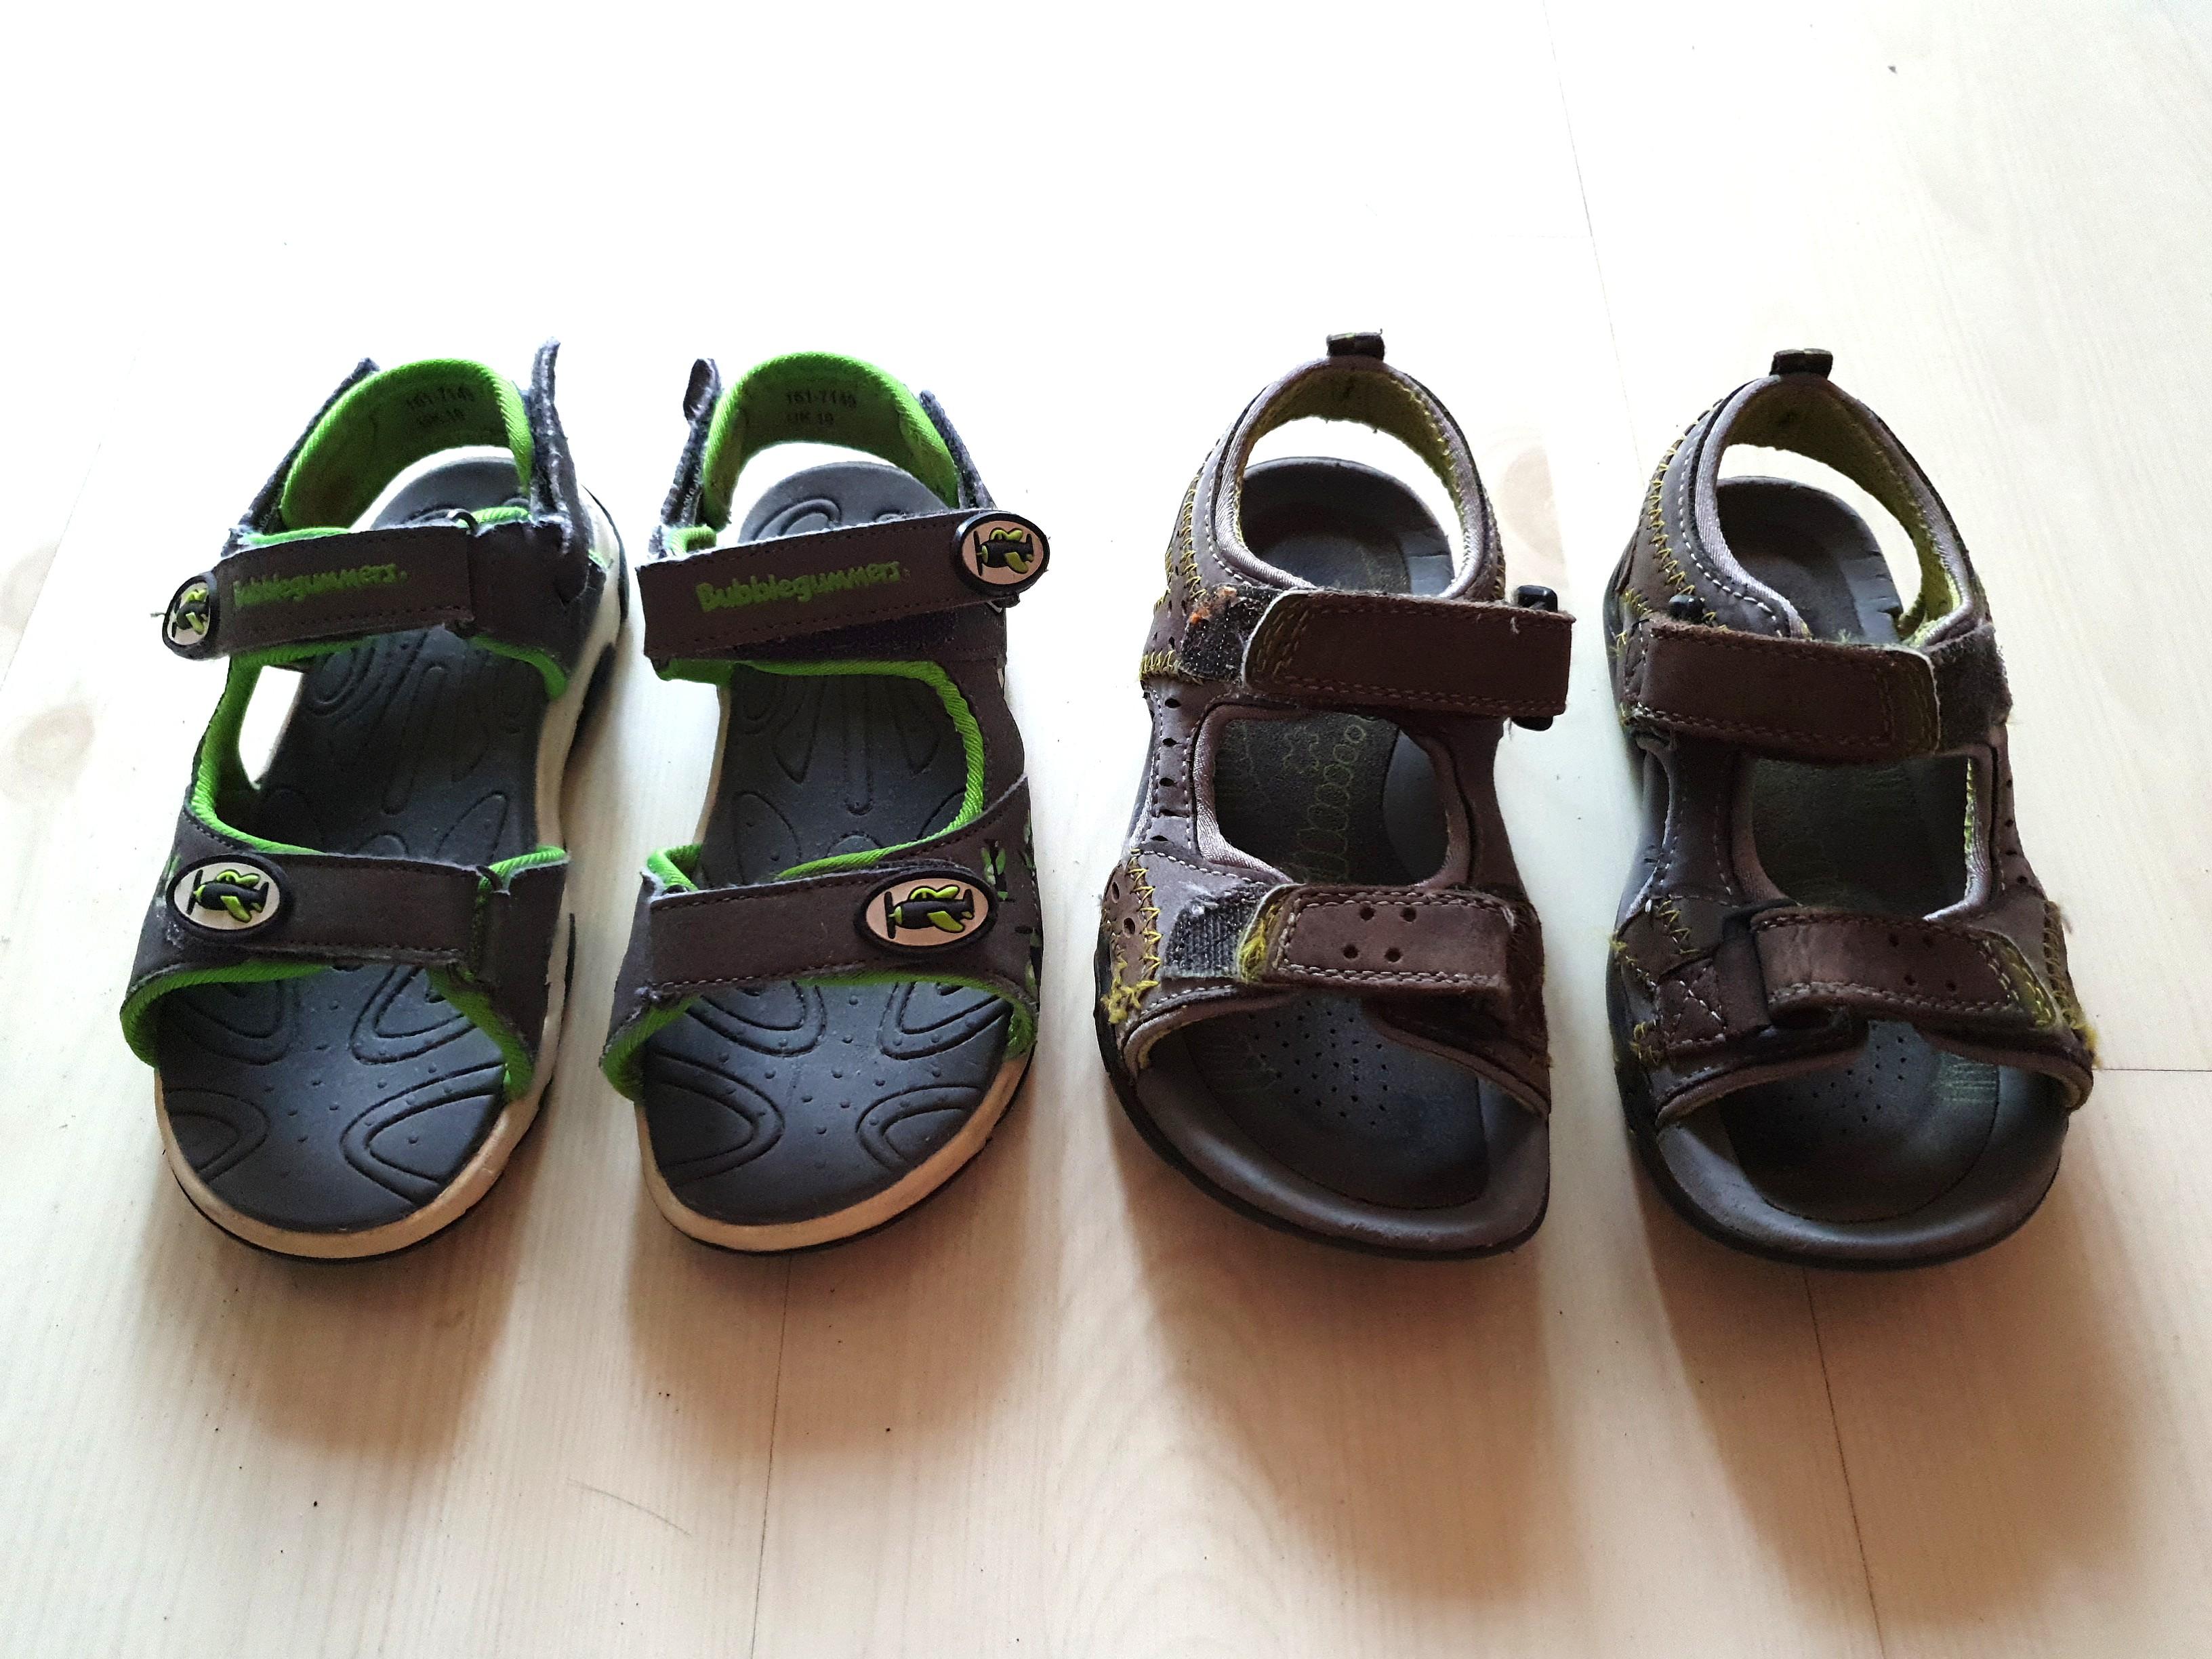 clarks size 2 sandals